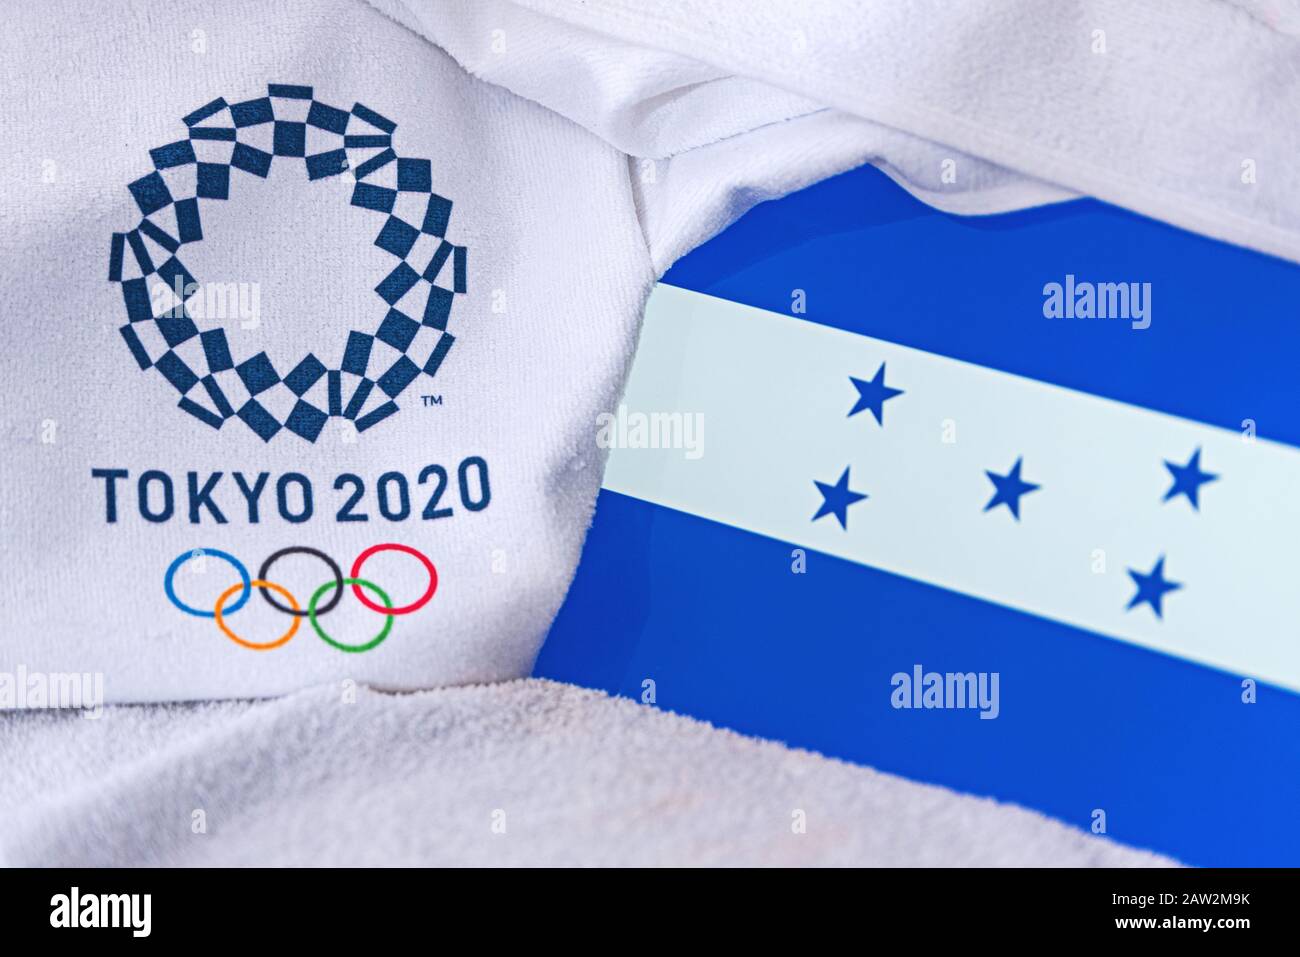 Tokio Japon Febrero 4 2020 Bandera Nacional De Honduras Logotipo Oficial De Los Juegos Olimpicos De Verano En Tokio 2020 Fondo Blanco Fotografia De Stock Alamy